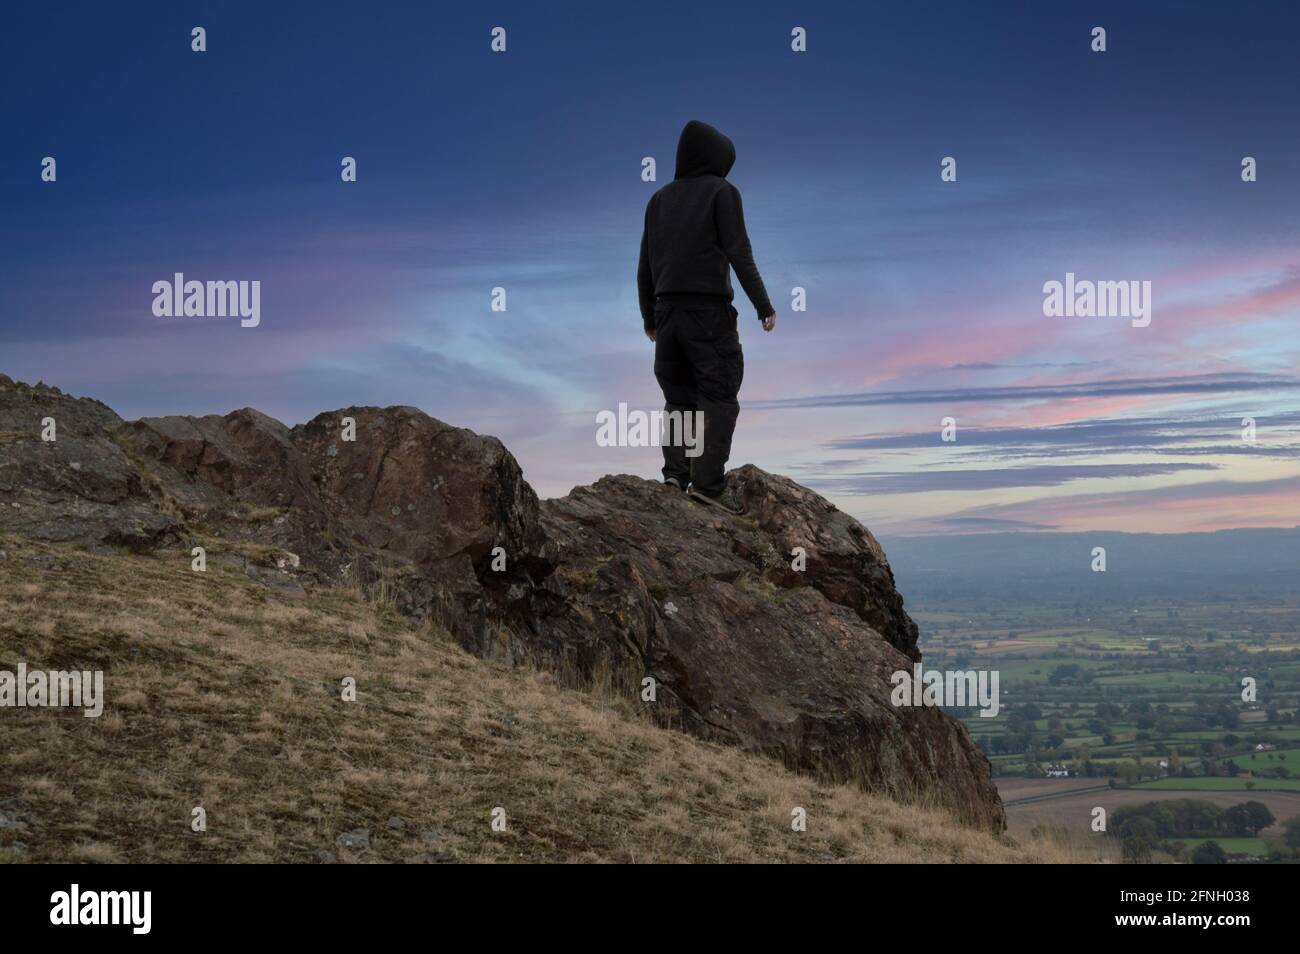 Ein launischer Mann mit Kapuze, zurück zur Kamera, der auf einem Berg steht und einen wunderschönen Sonnenuntergang anschaut. Stockfoto